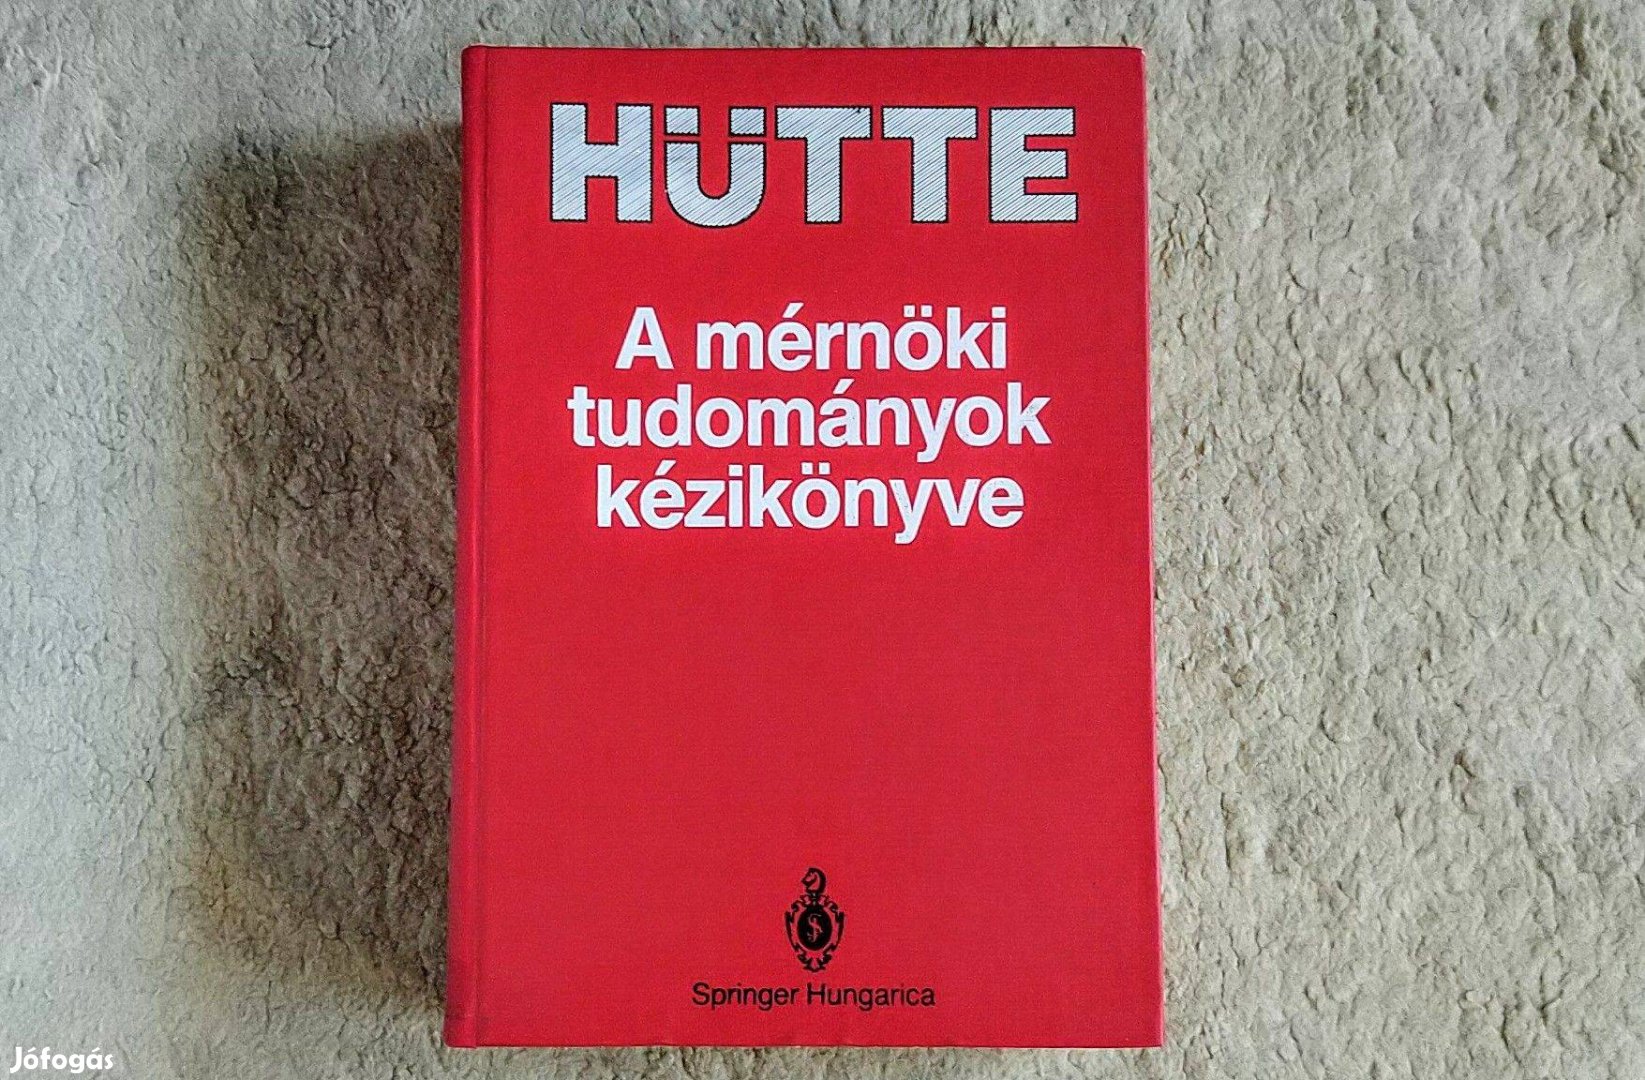 Hütte - A mérnöki tudományok kézikönyve - Horst, Bódis, Bajcsay